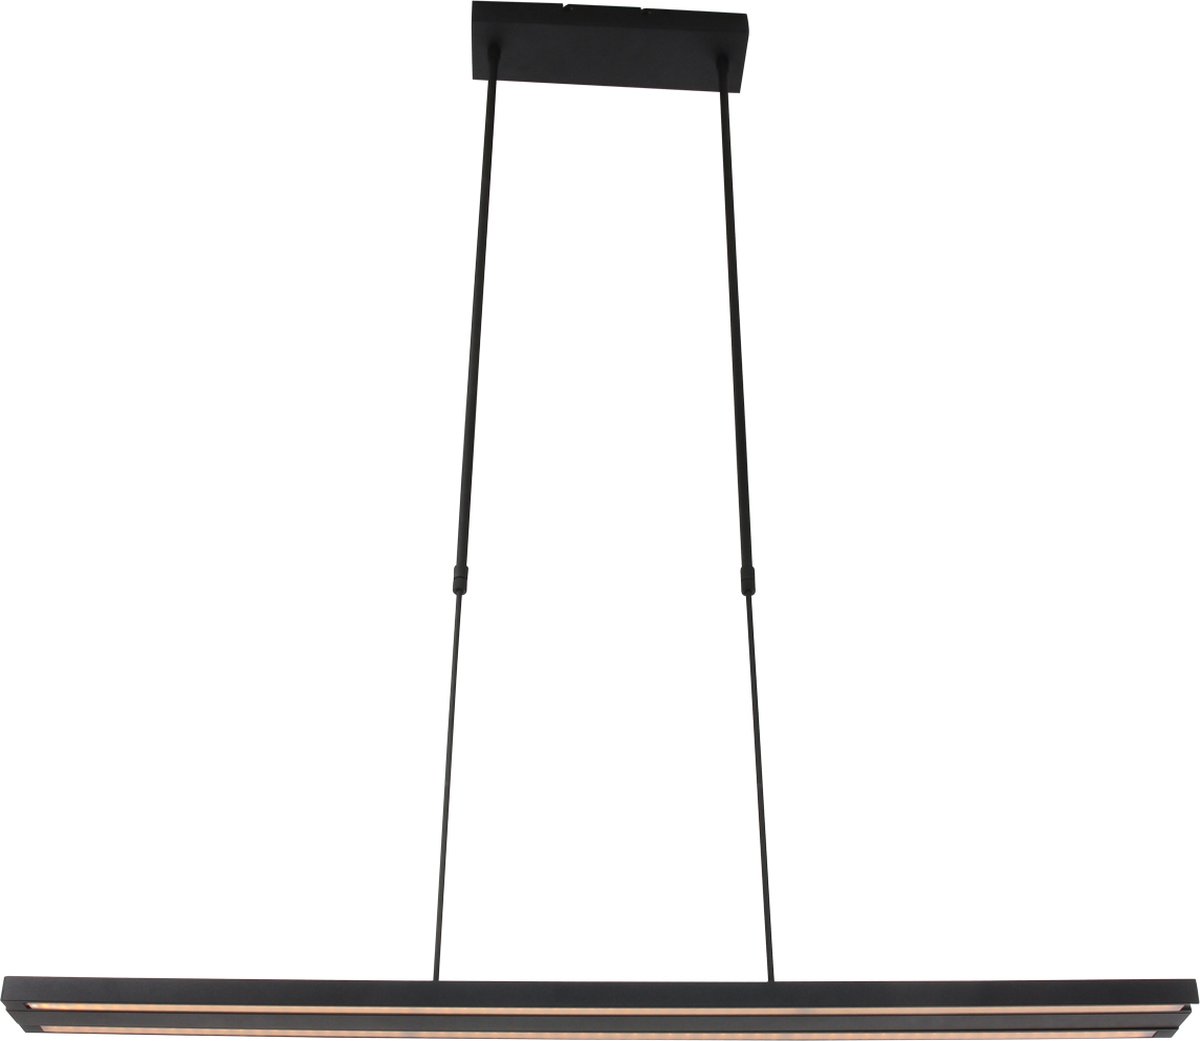 Hanglamp - Bussandri Limited - Design - Metaal - Design - LED - L: 120cm - Voor Binnen - Woonkamer - Eetkamer - Zwart